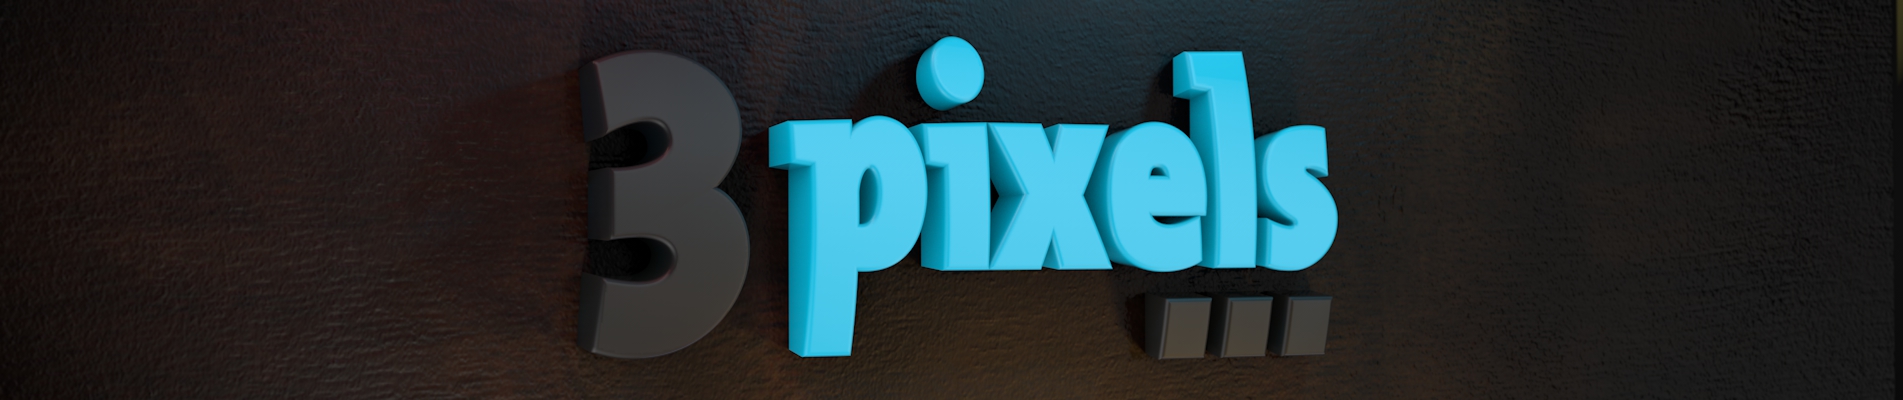 3pixels-logo